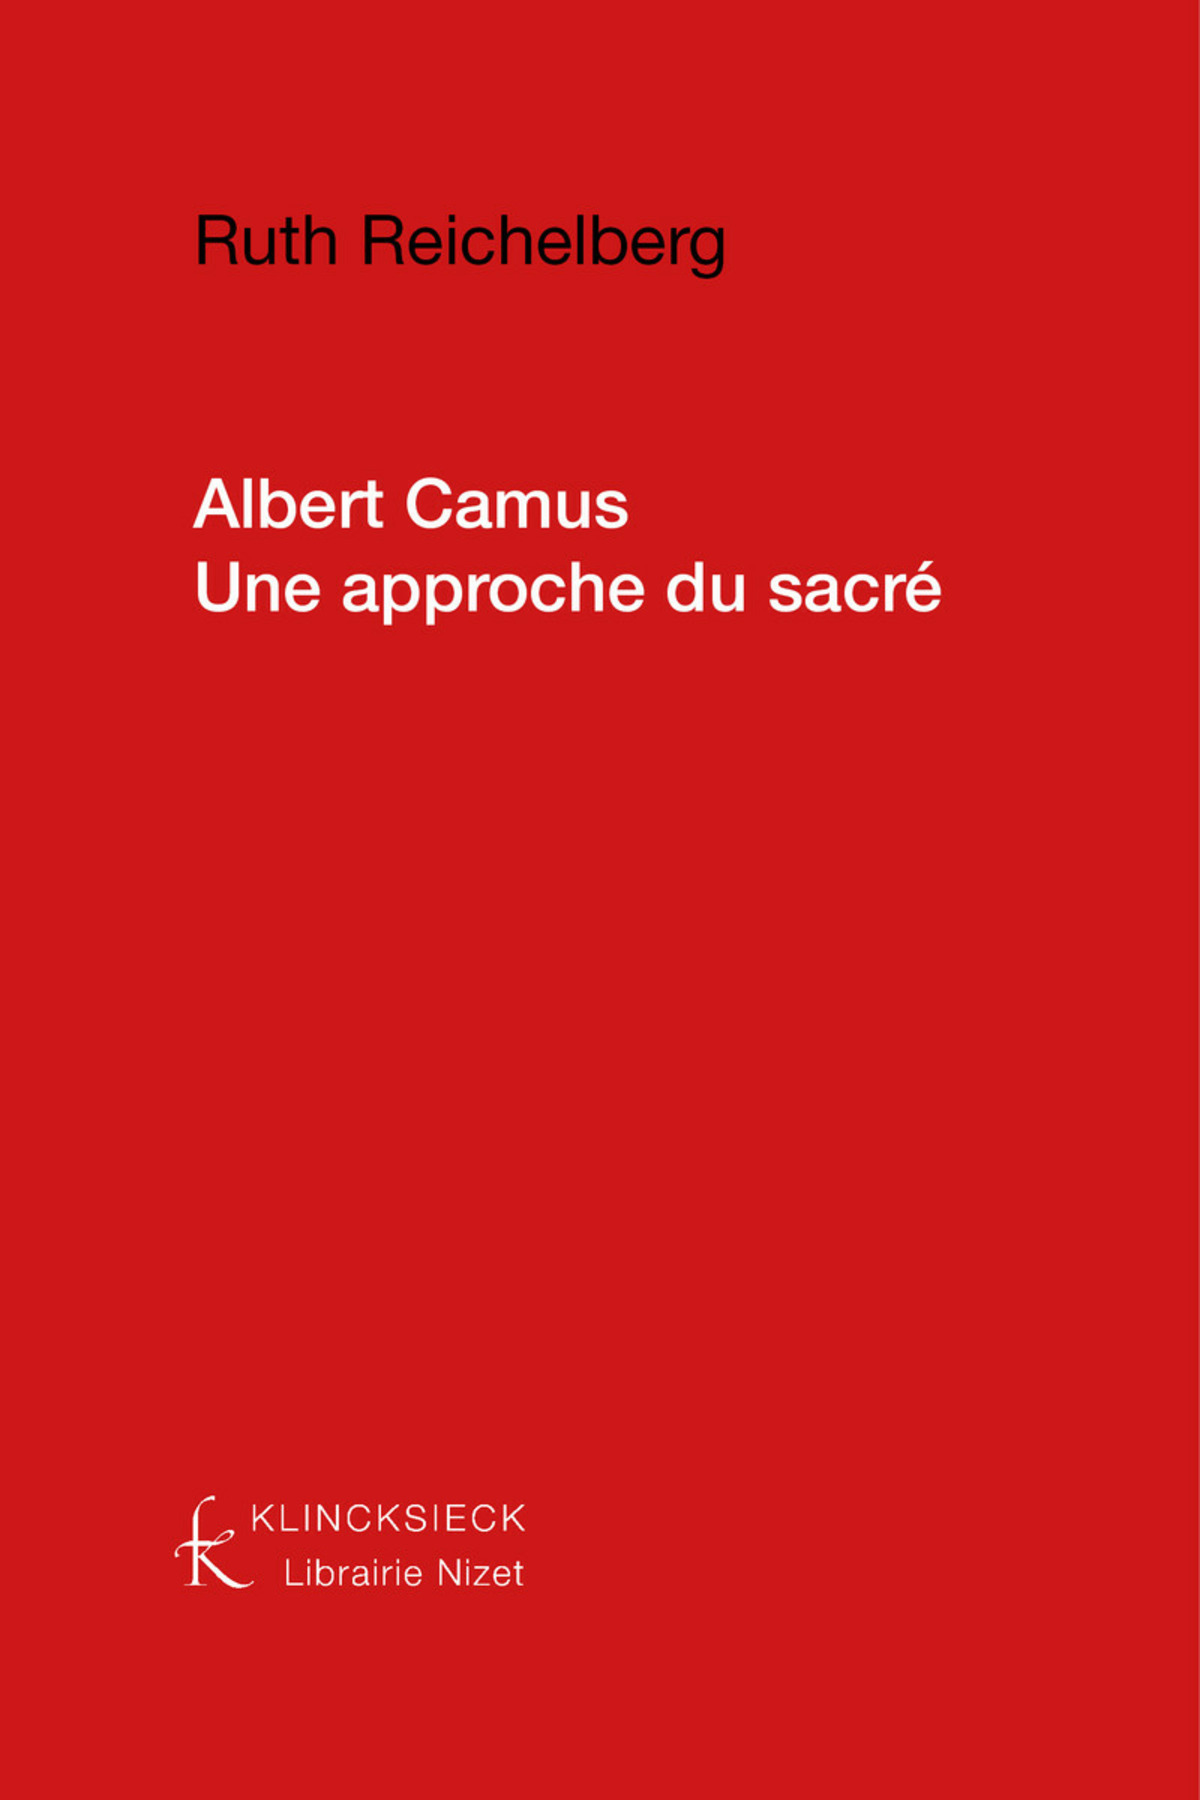 Albert Camus, une approche du sacré